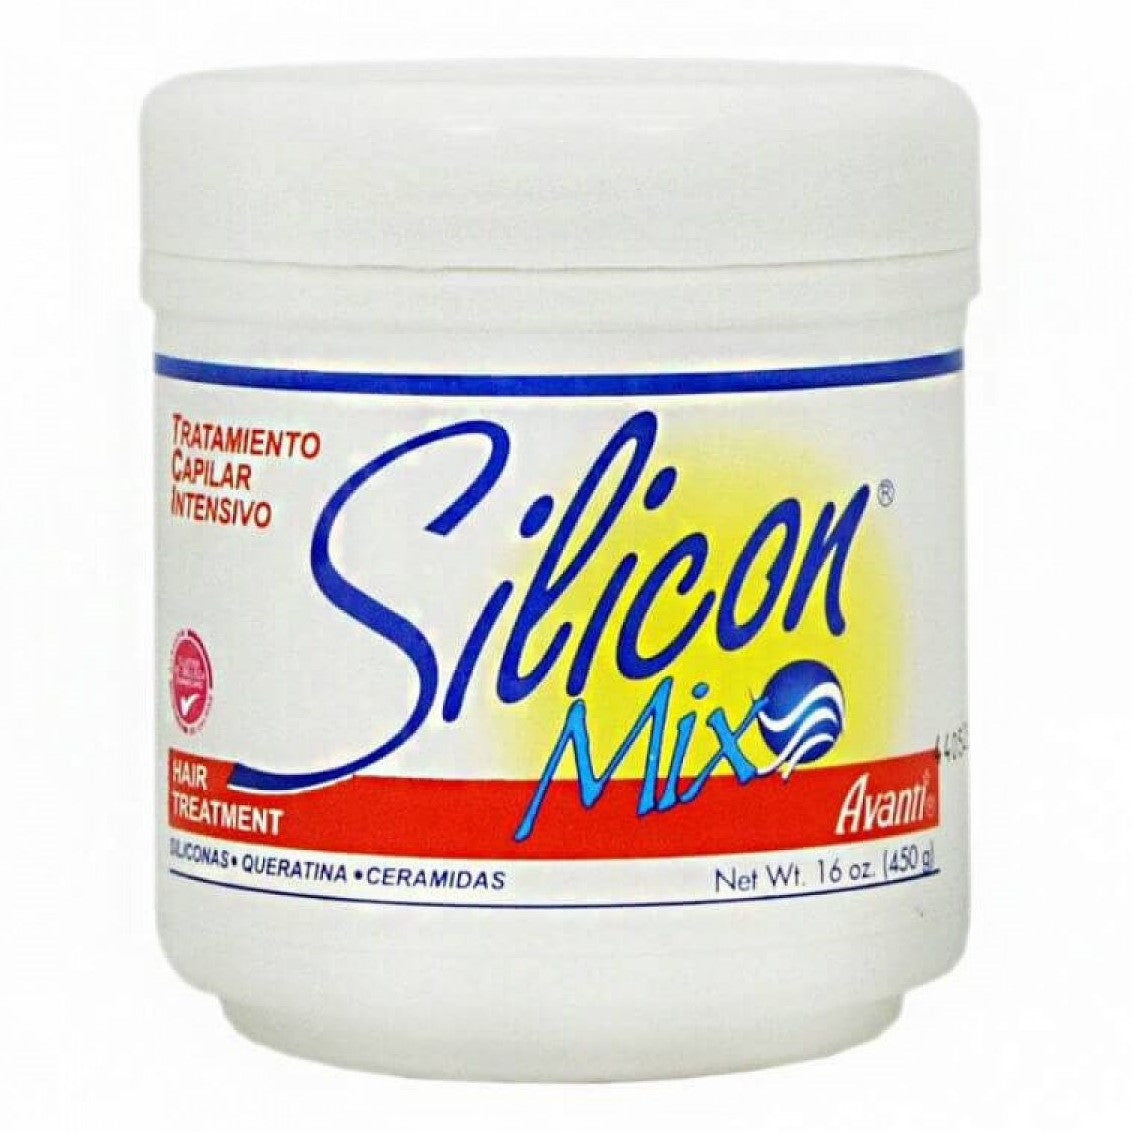 Silicon Mix hårbehandling 450g - Transformer håret ditt - Gi håret kjærlighet!